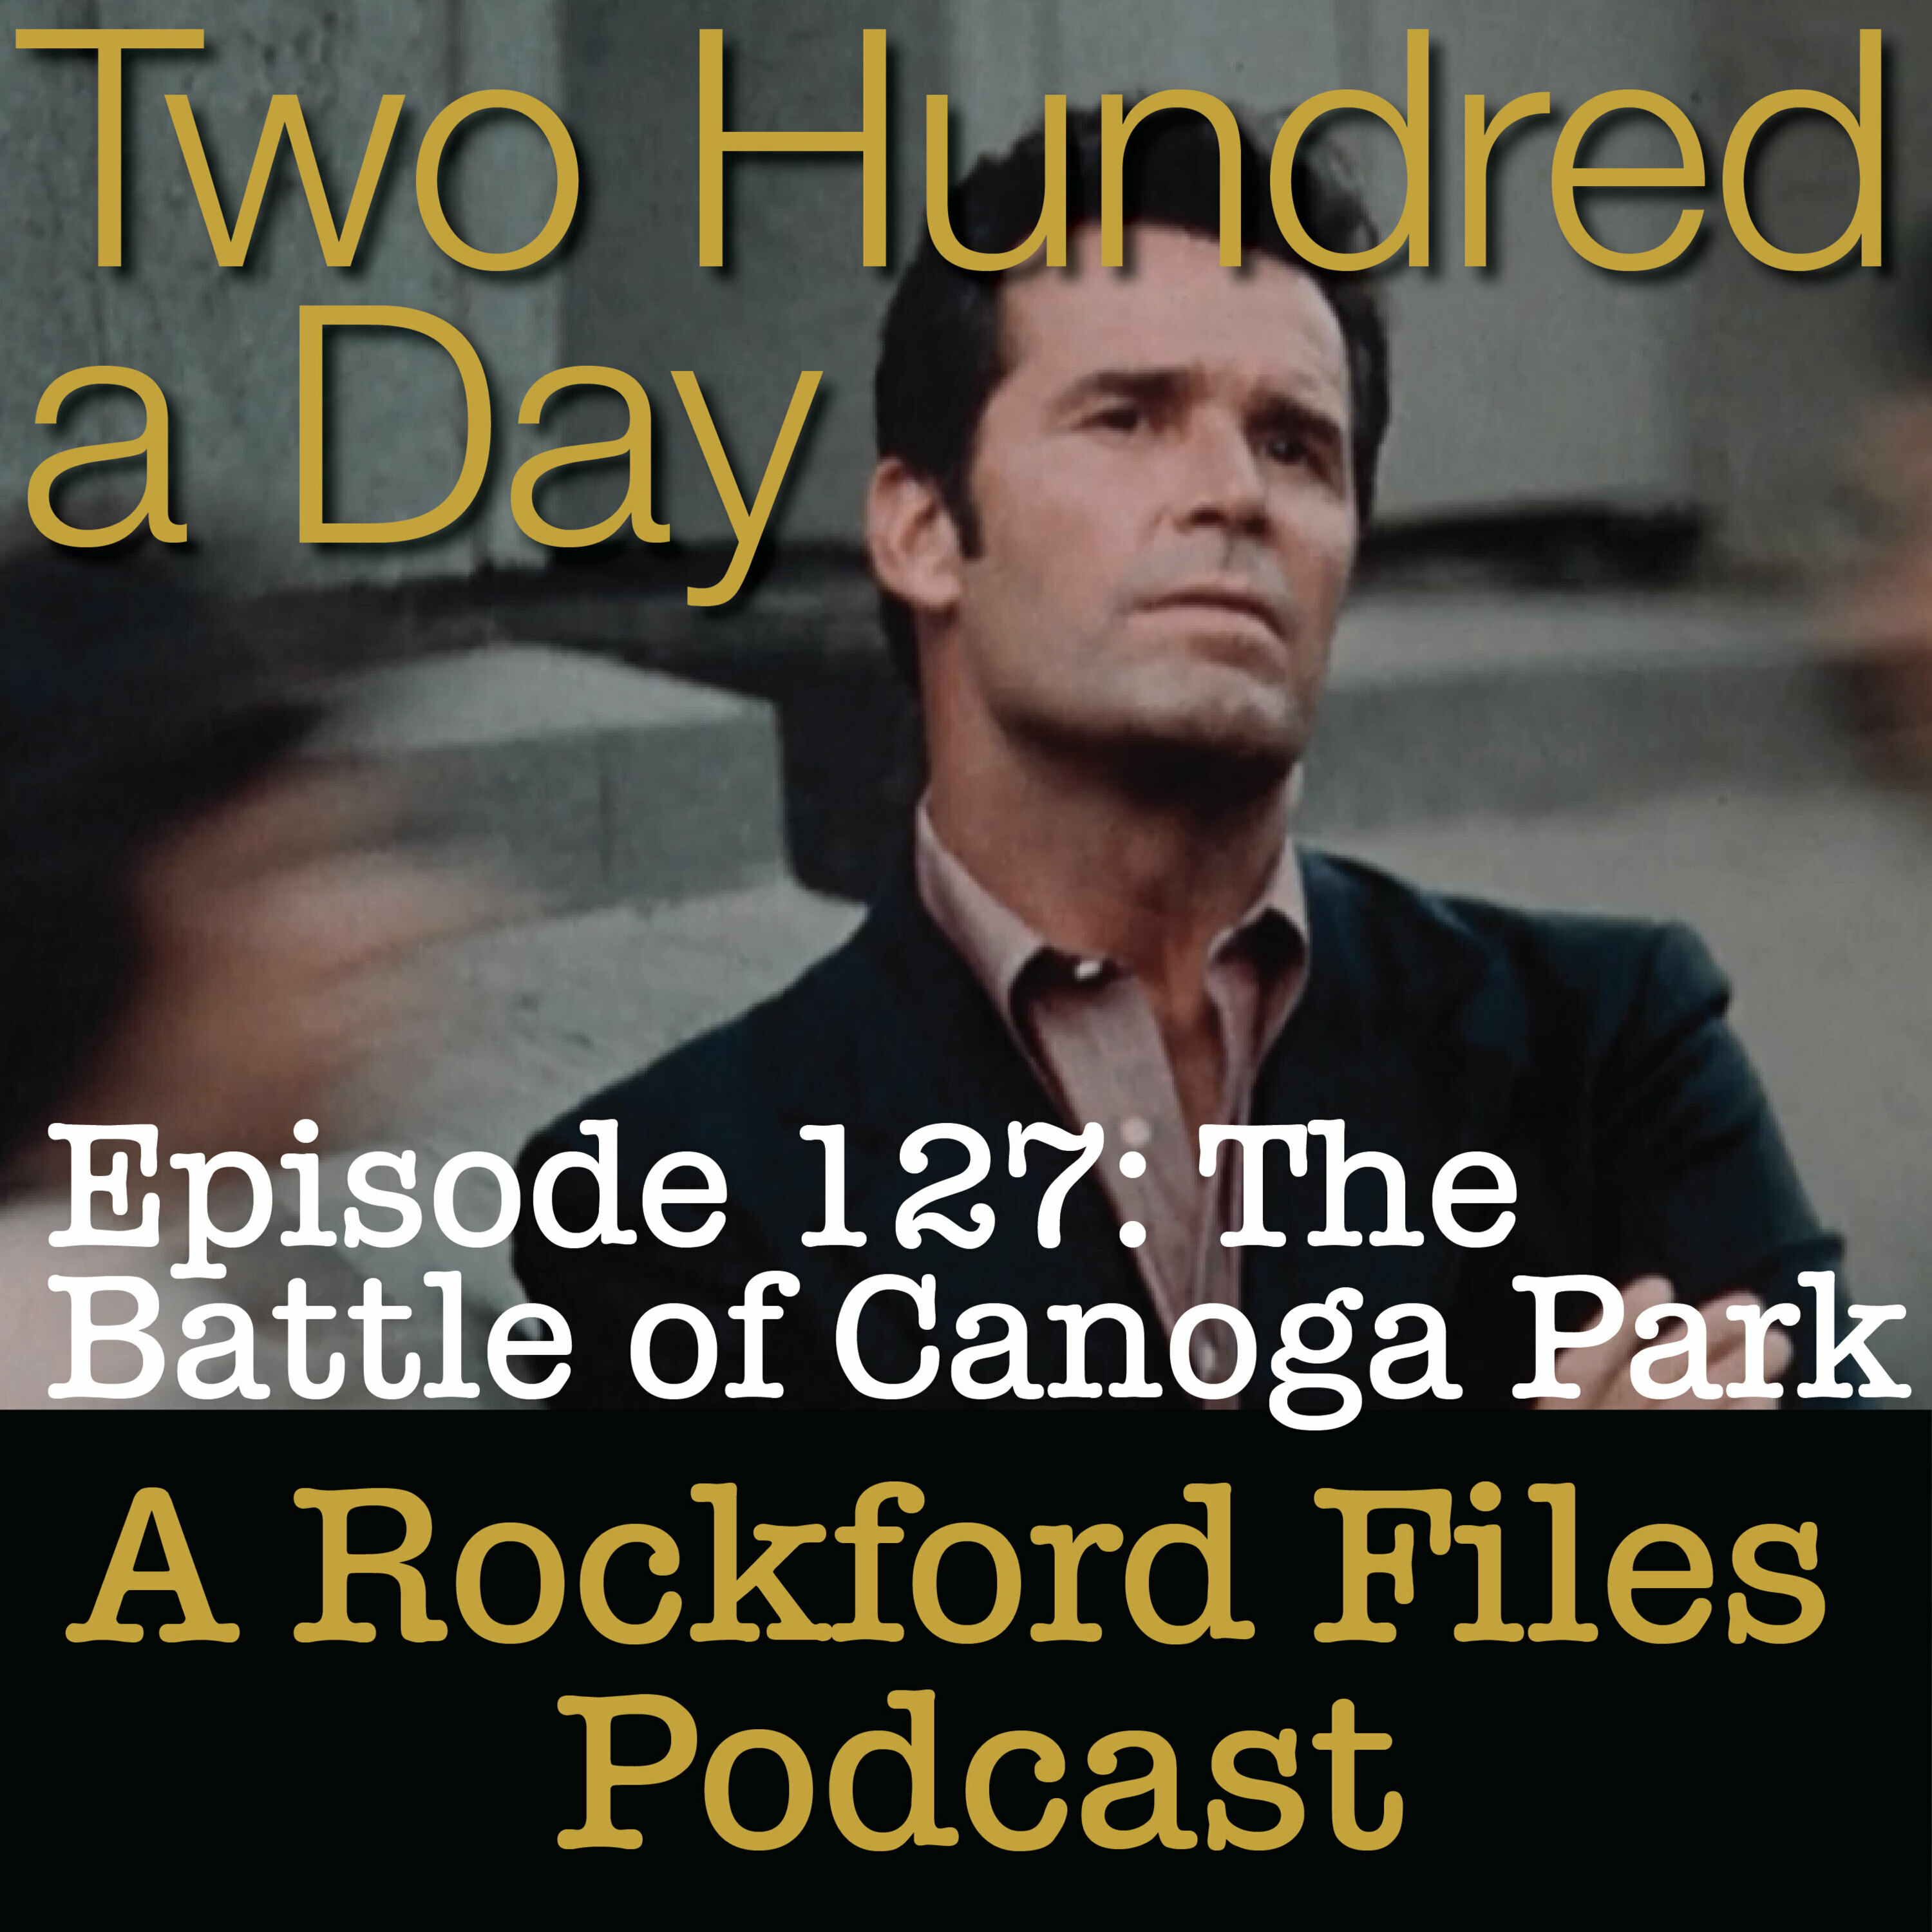 Episode 127: The Battle of Canoga Park